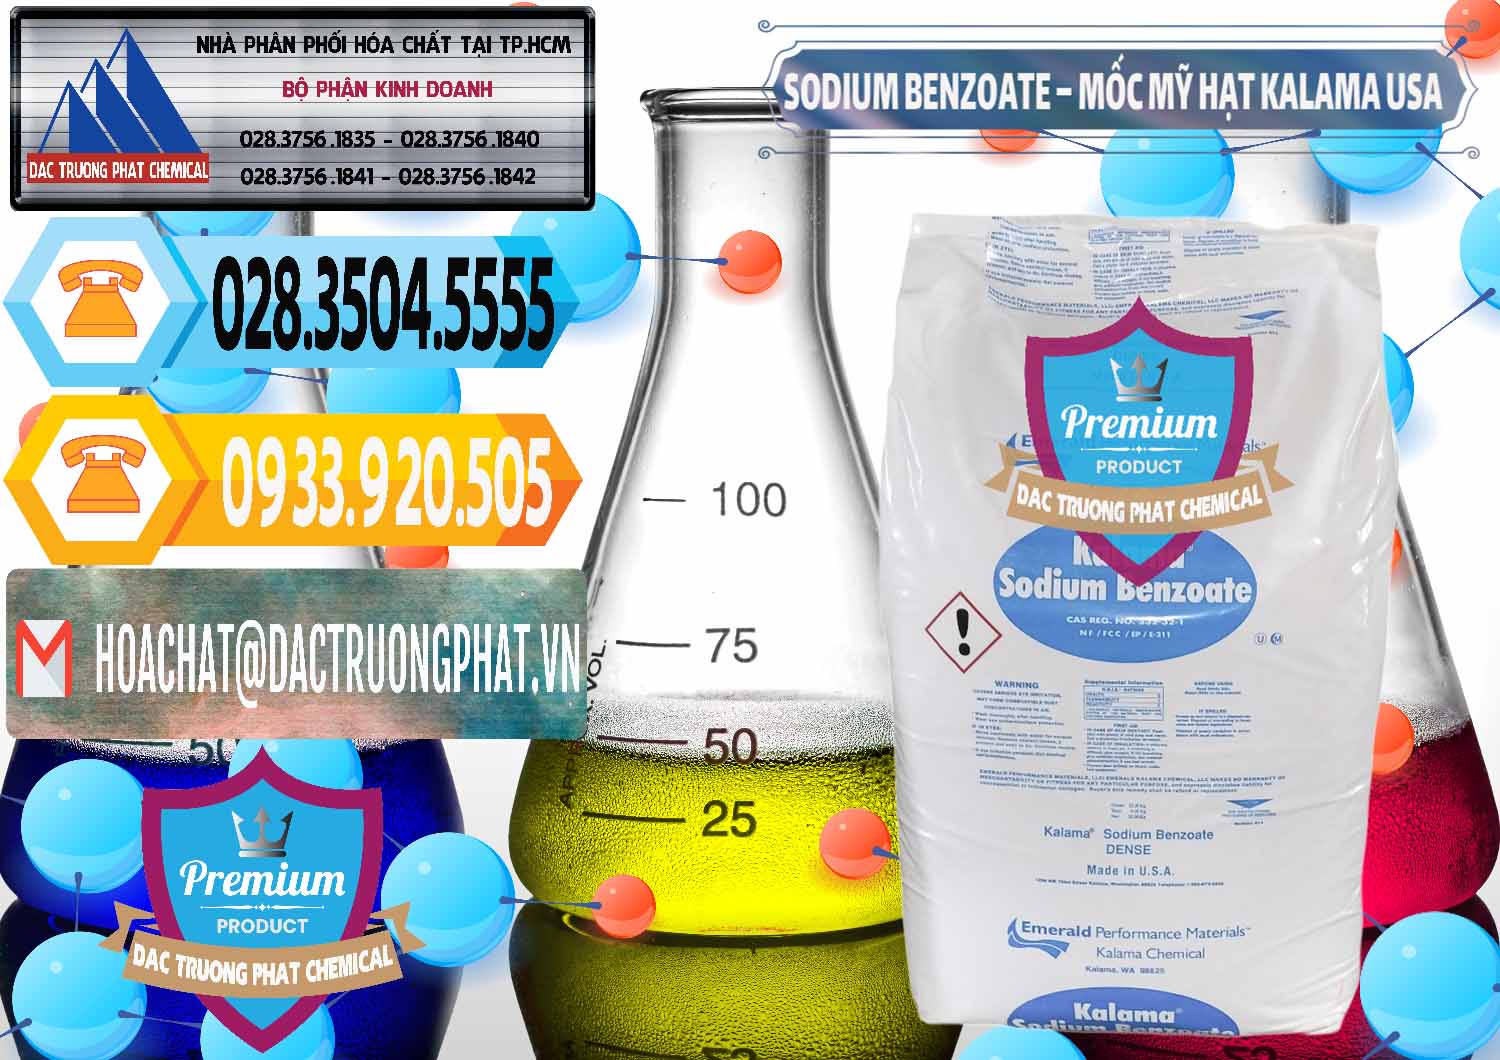 Nhà cung ứng ( bán ) Sodium Benzoate - Mốc Hạt Kalama Food Grade Mỹ Usa - 0137 - Cty cung cấp & phân phối hóa chất tại TP.HCM - hoachattayrua.net